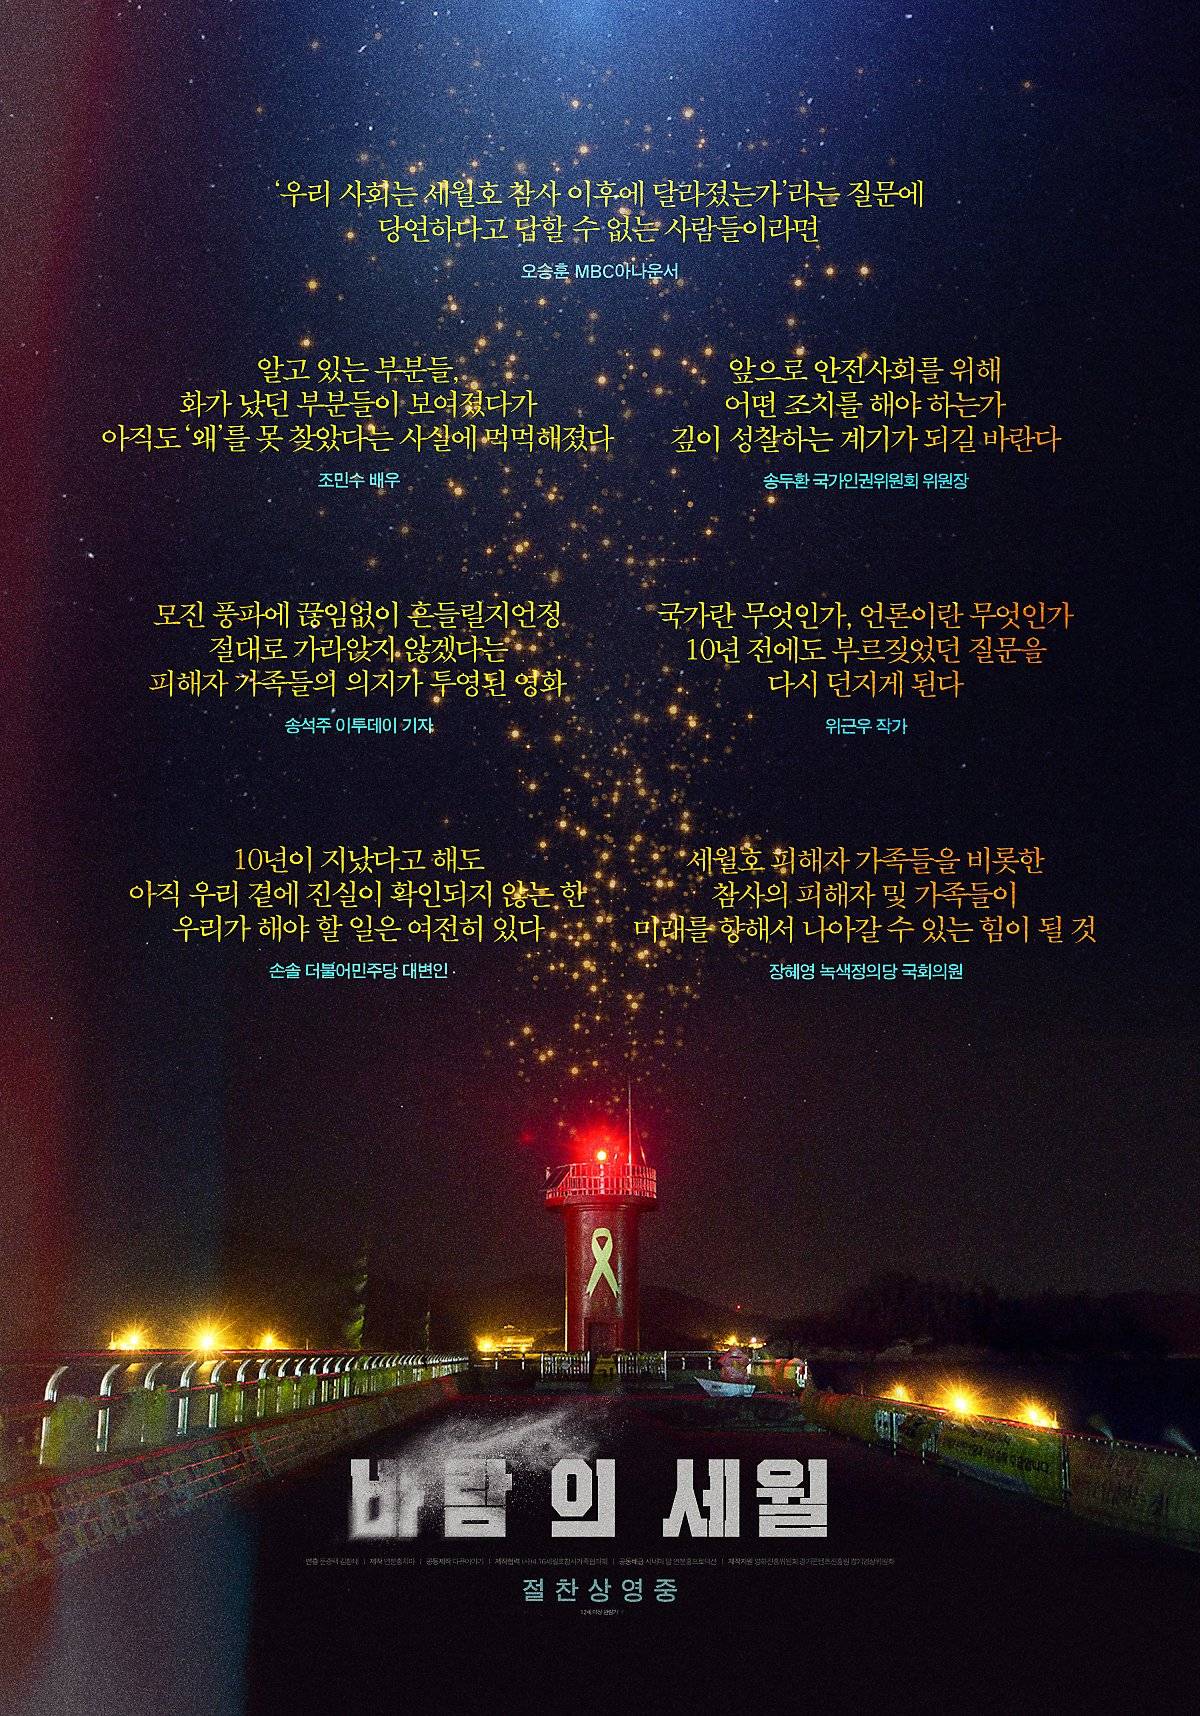 세월호 참사 유가족이 만든 다큐멘터리 영화 '바람의 세월' 리뷰포스터.jpg | 인스티즈